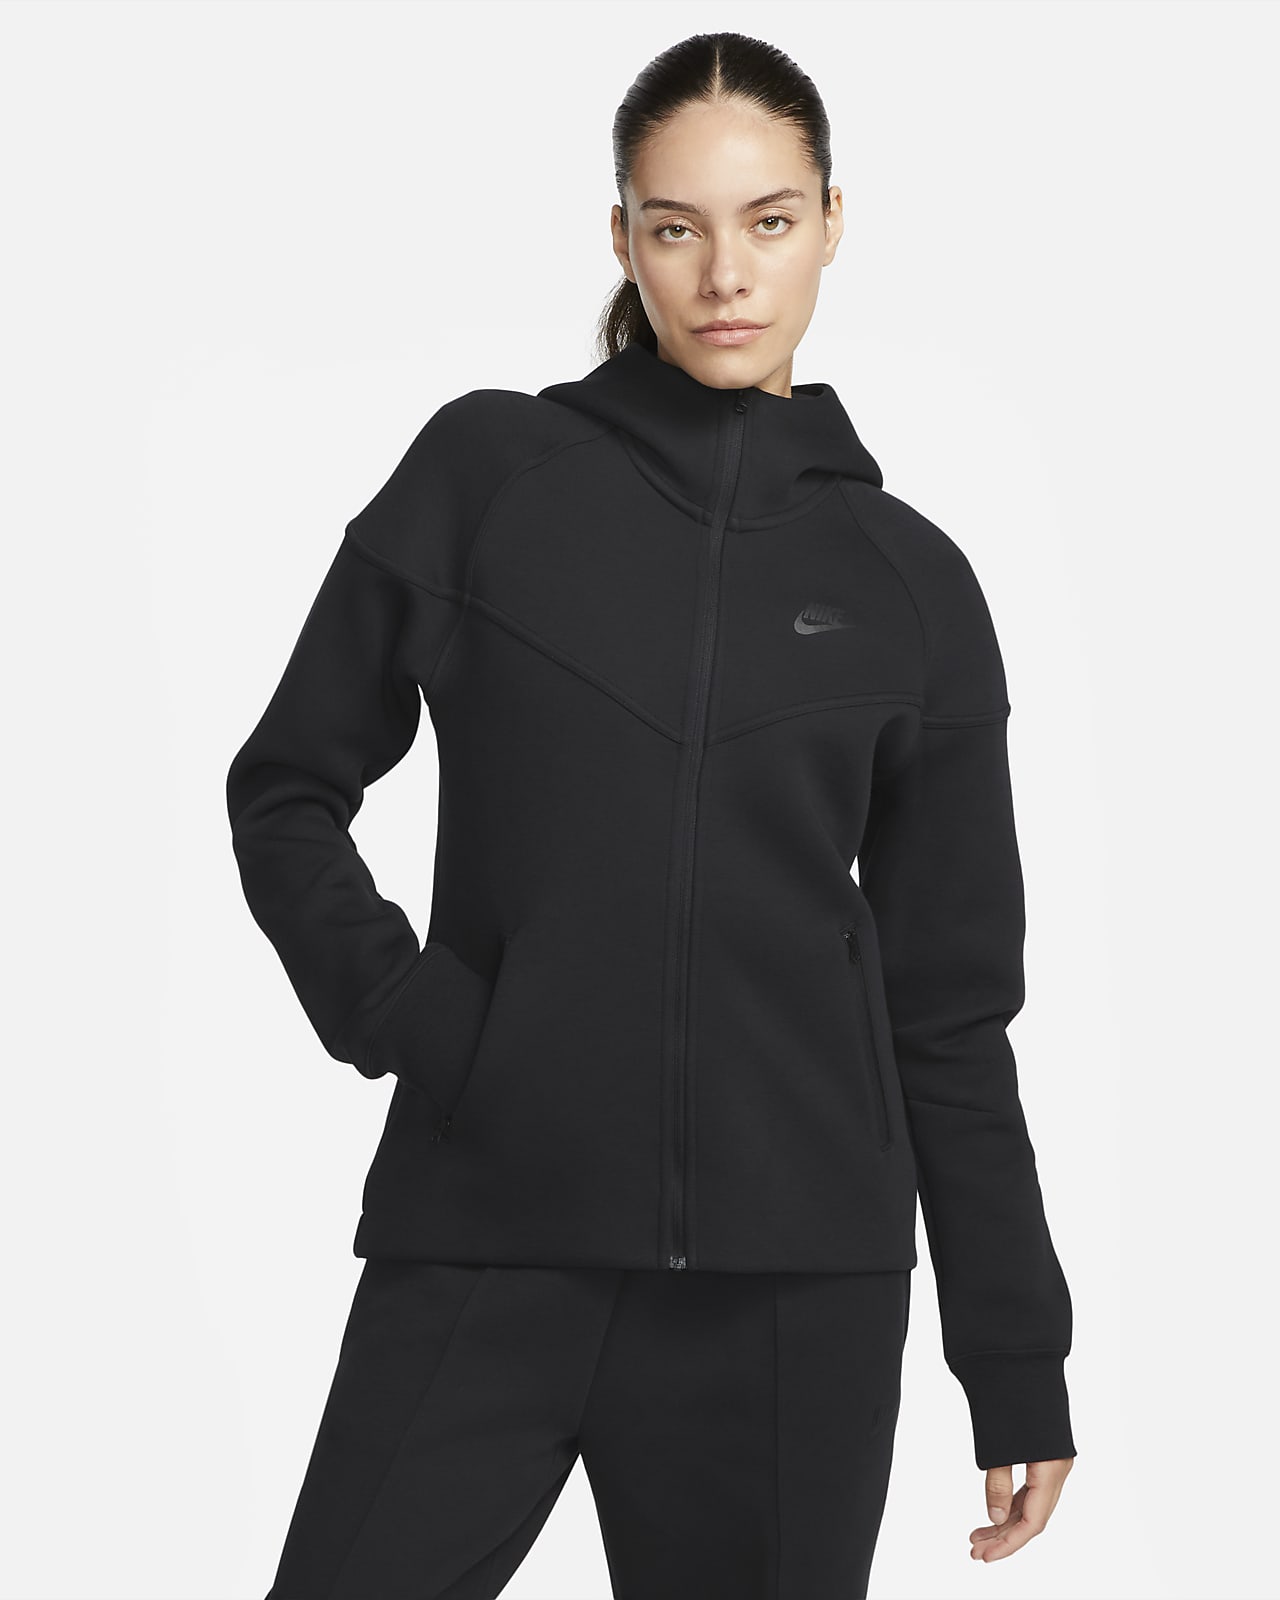 Γυναικεία μπλούζα με κουκούλα και φερμουάρ Nike Sportswear Tech Fleece Windrunner